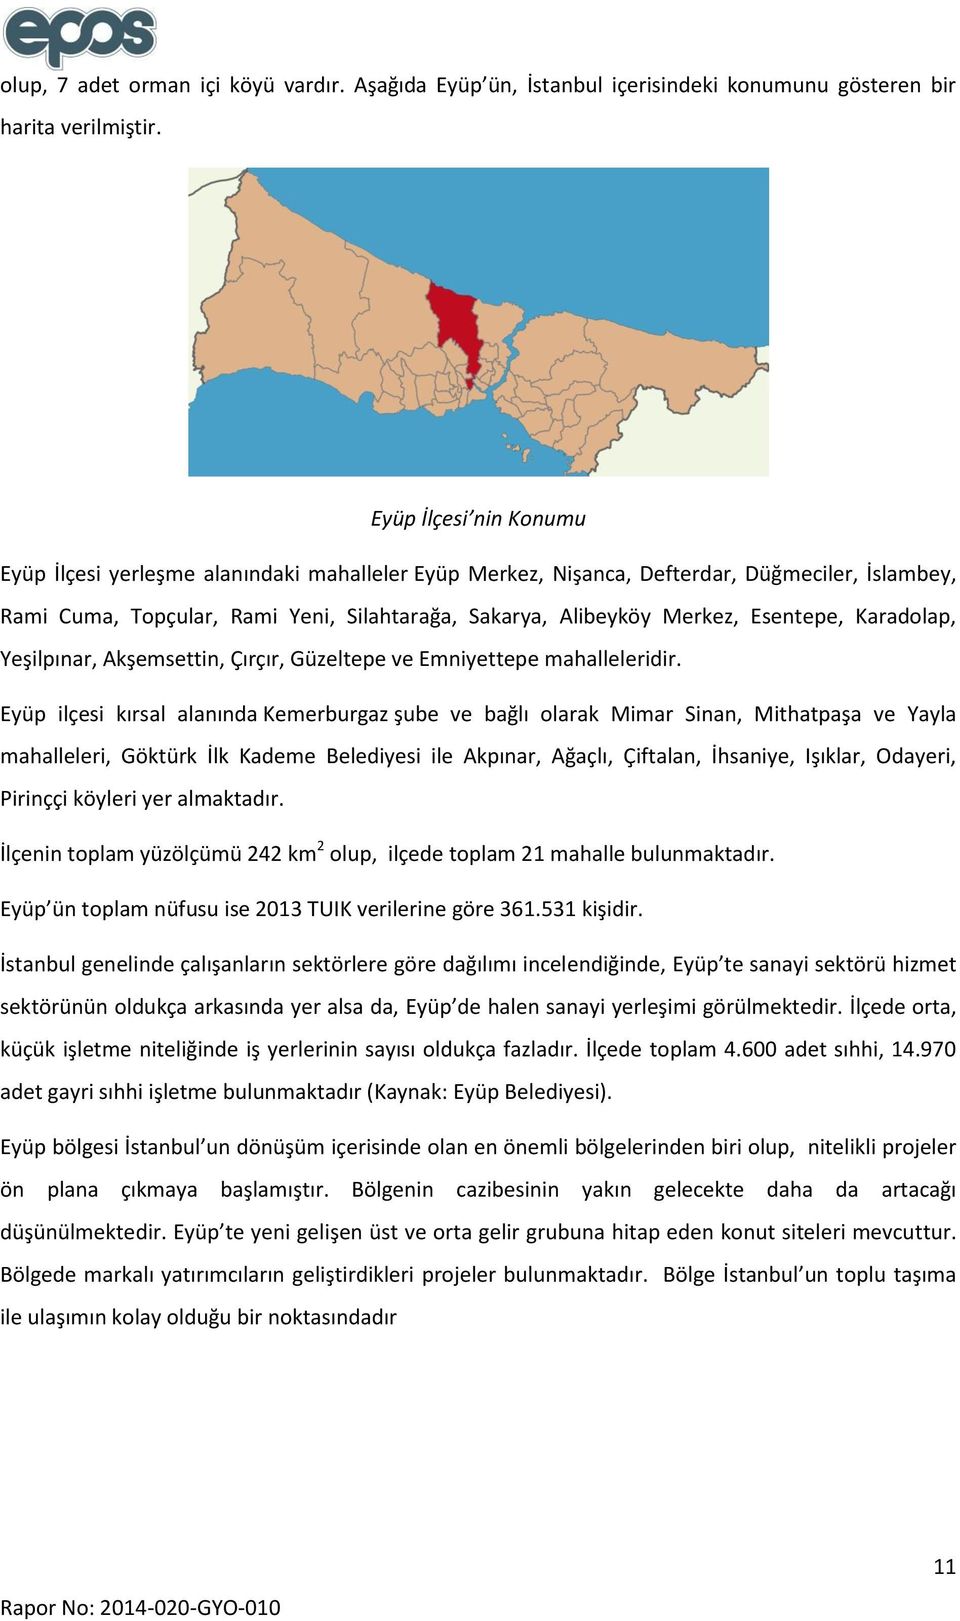 Esentepe, Karadolap, Yeşilpınar, Akşemsettin, Çırçır, Güzeltepe ve Emniyettepe mahalleleridir.